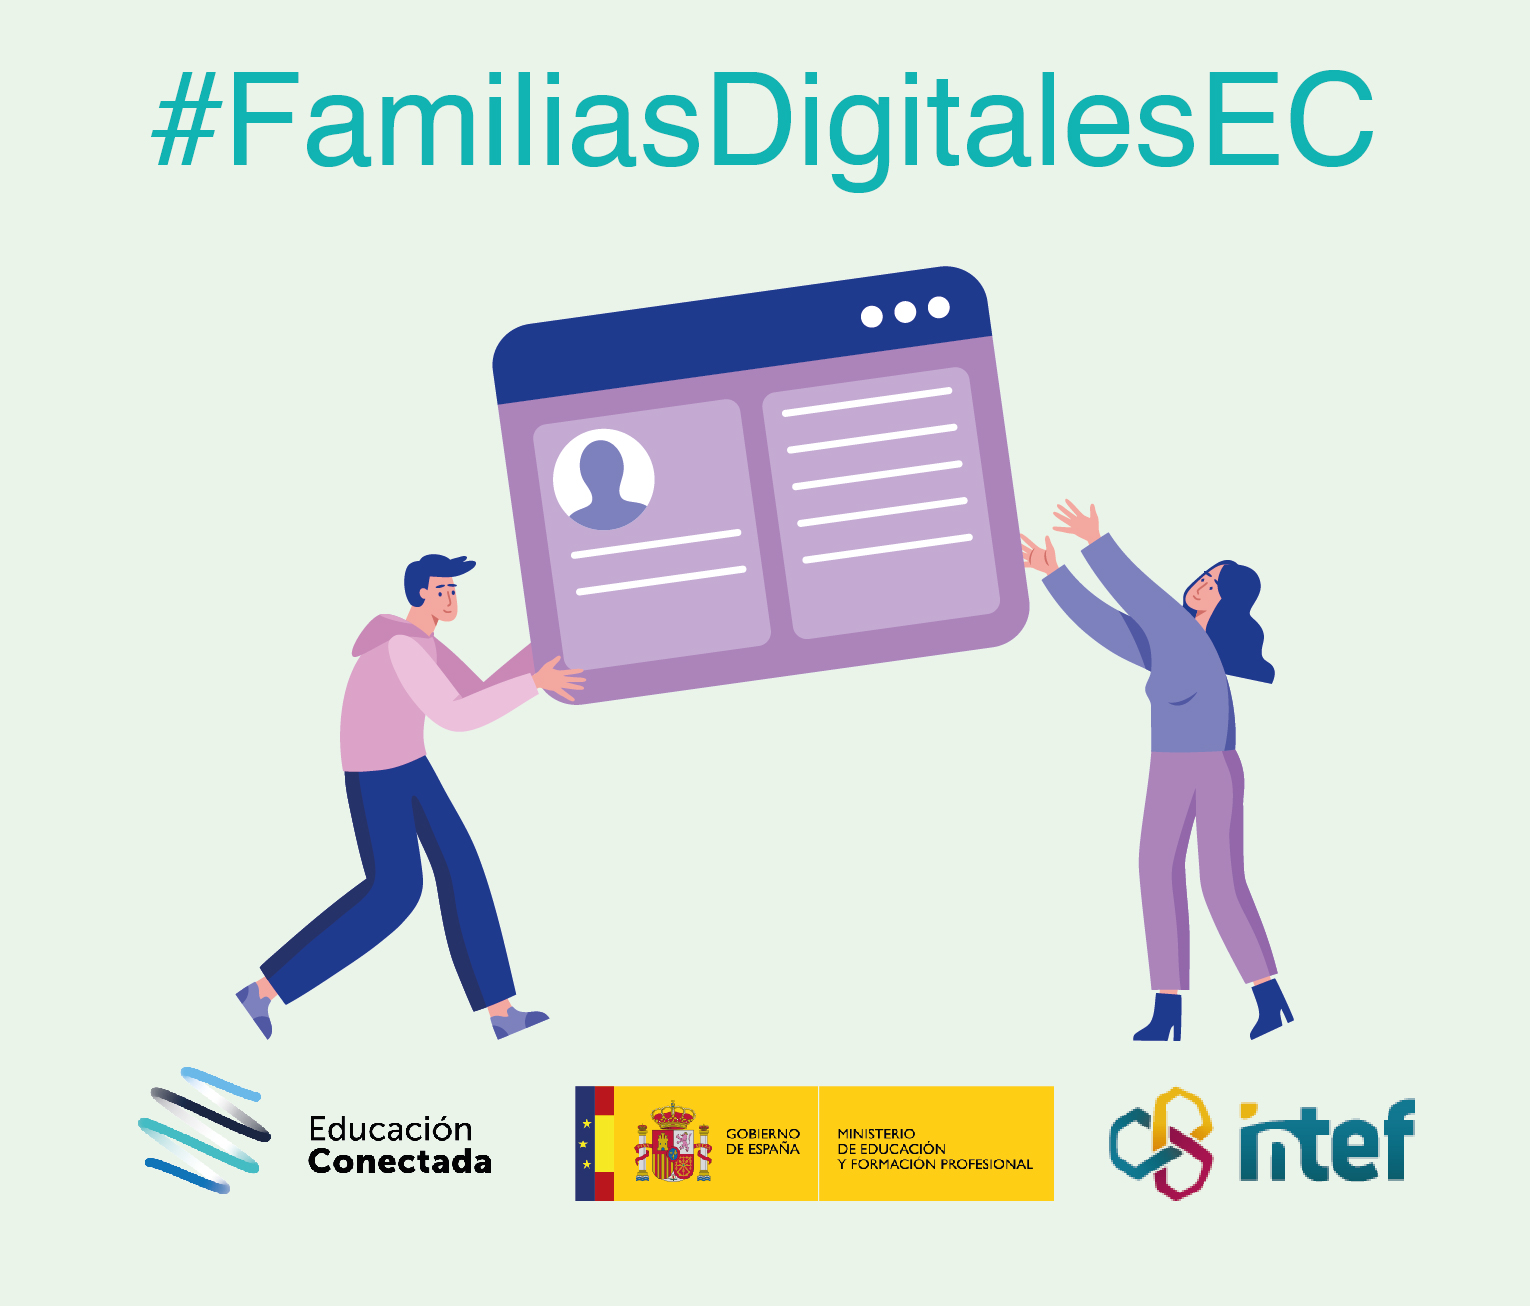 Familias digitales: Interactúa en la red y gestiona tu identidad digital (nivel avanzado) FamiliasDig6